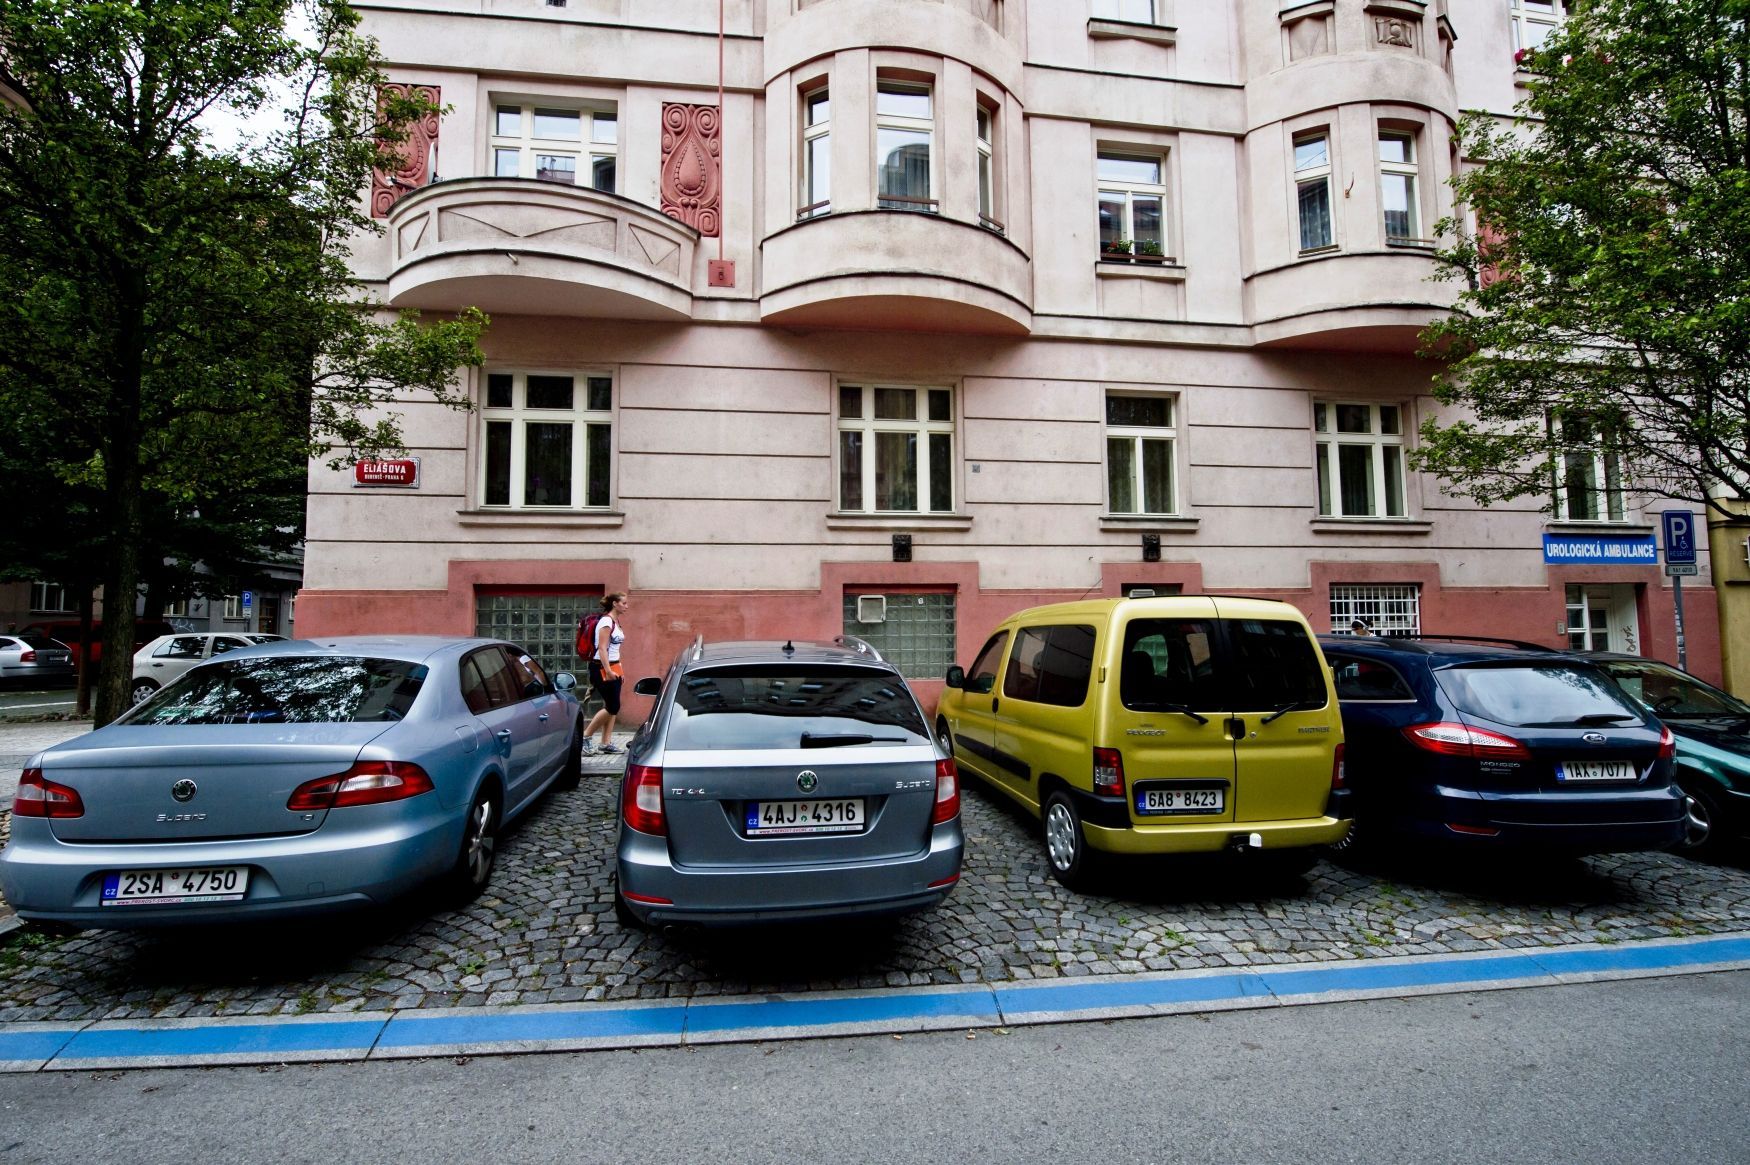 Parkování v Praze - modrý pruh